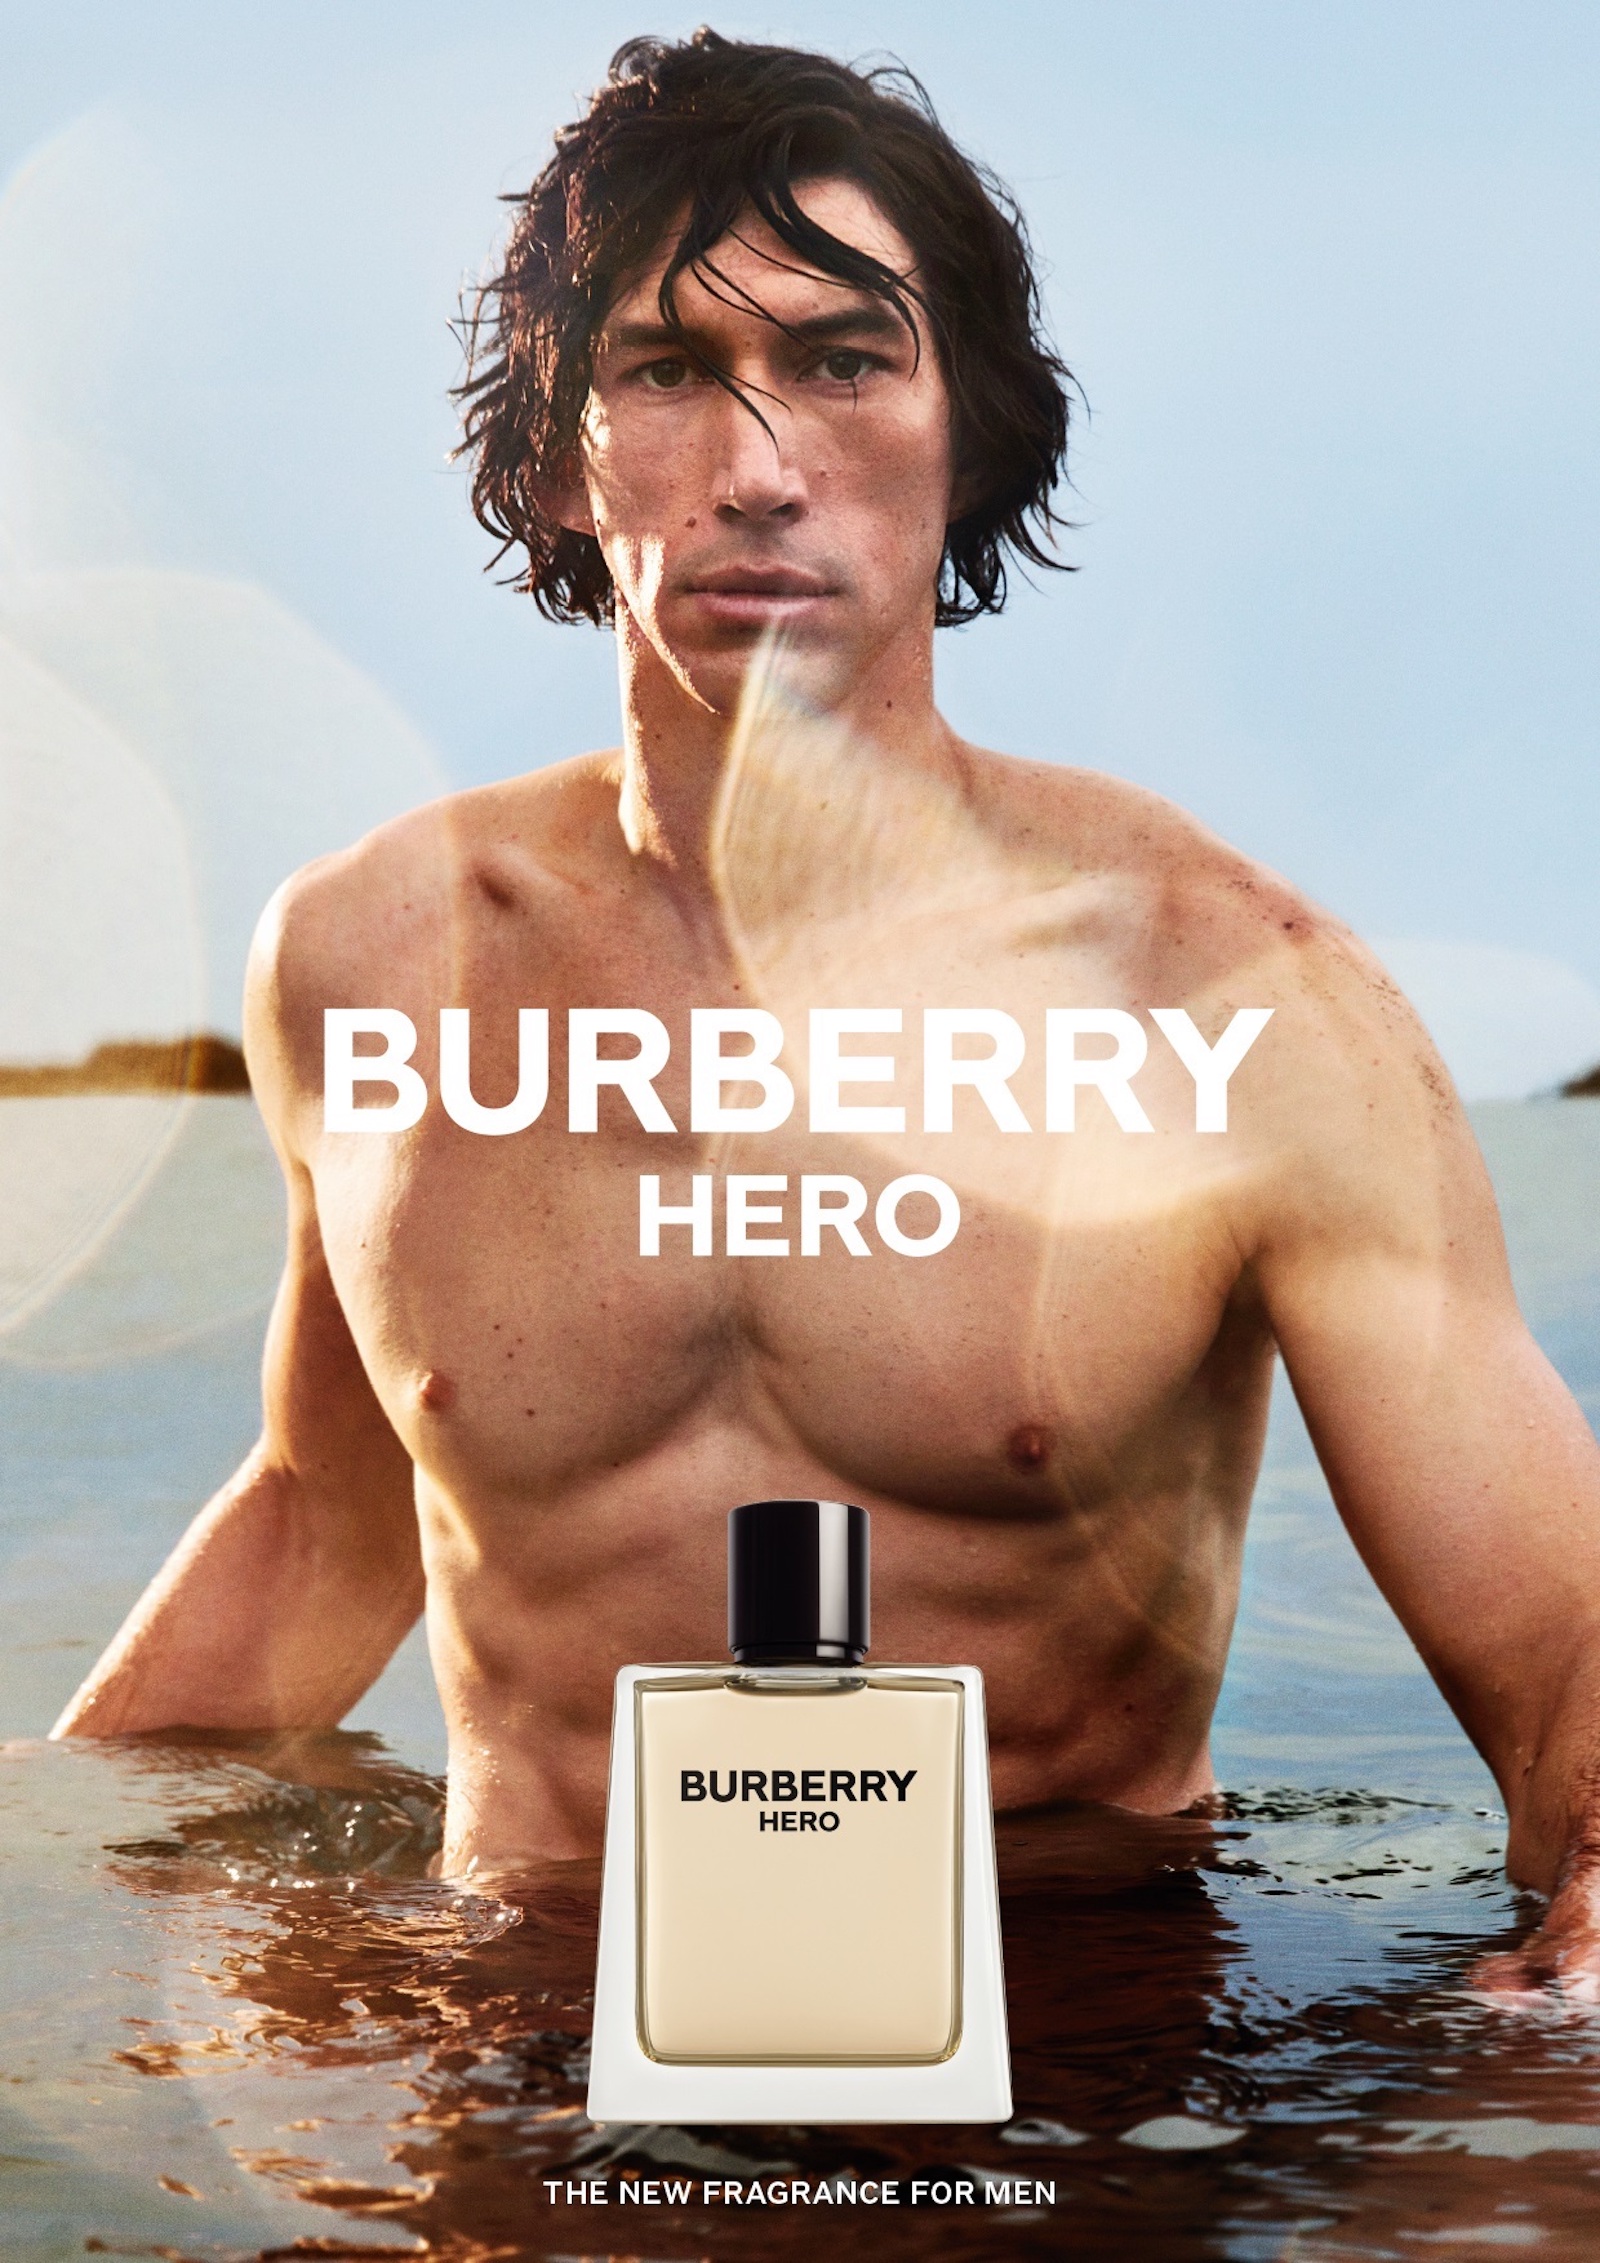 BURBERRY REVEALS NEW FRAGRANCE FOR MEN, BURBERRY HERO, STARRING ADAM DRIVER  | V Man